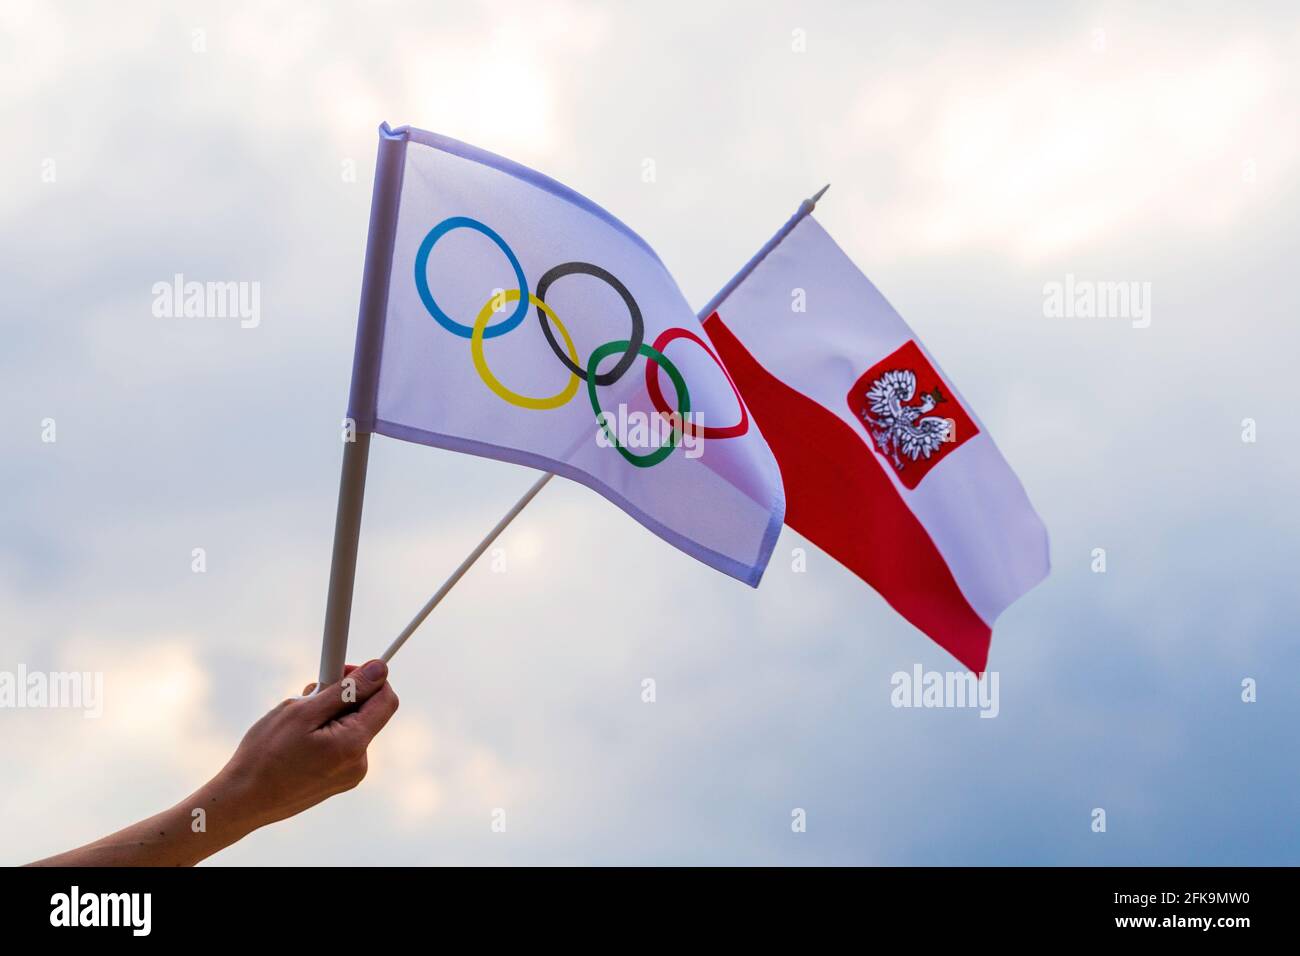 Fan signe le drapeau national de la Pologne et le drapeau olympique avec le symbole anneaux olympiques. Banque D'Images